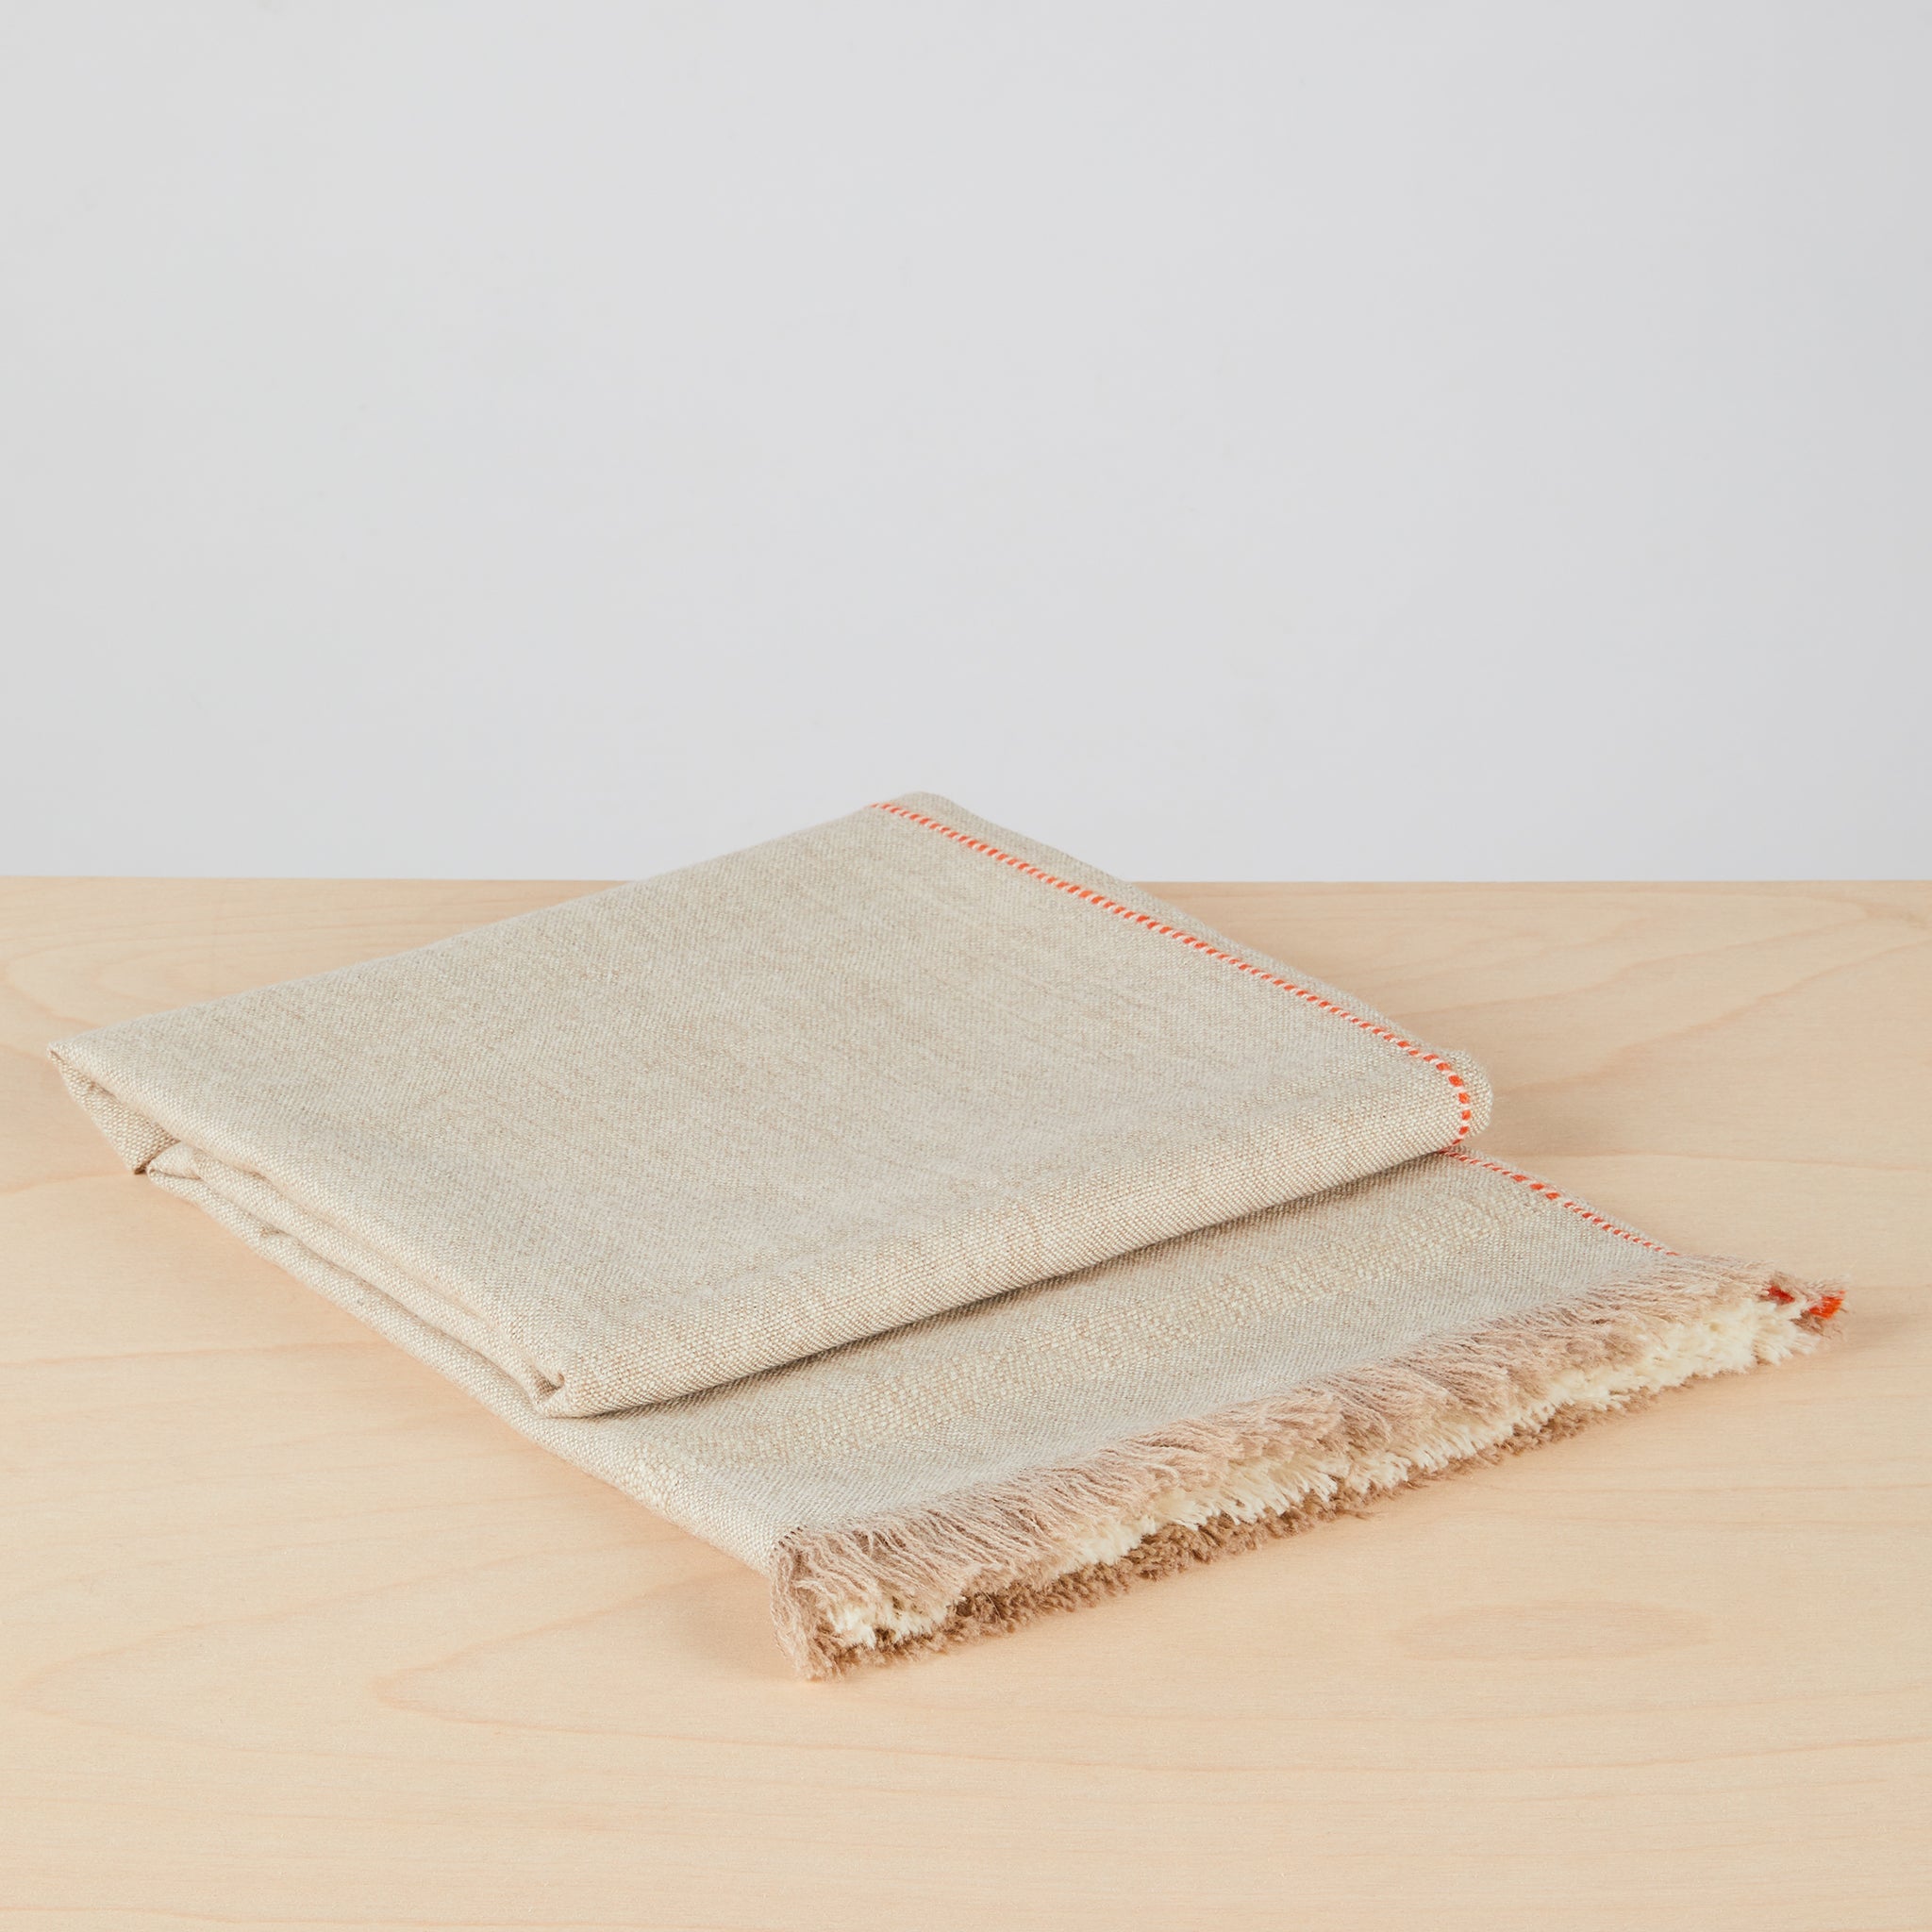 Detailansciht gefaltet:  Stilvolle, handgewebte Decke "Asiri" aus weichem Baby-Alpaka in Naturfarben. Mit Fransen, Hochrelief-Streifen und einem schmalen Kontraststreifen als Eyecatcher.